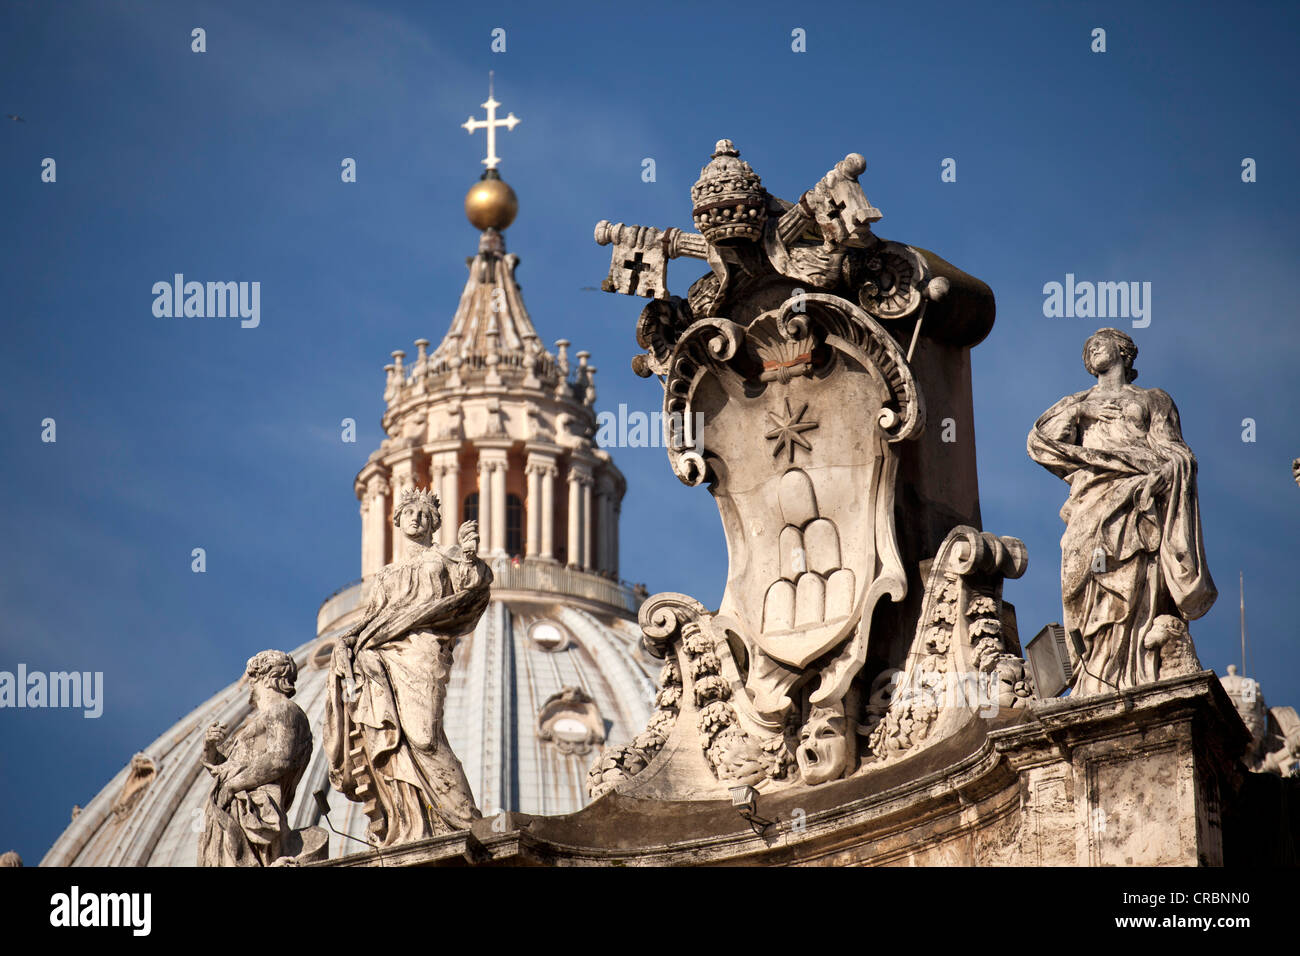 Groupe de sculptures sur la Basilique Saint Pierre, Rome, Italie, Europe Banque D'Images